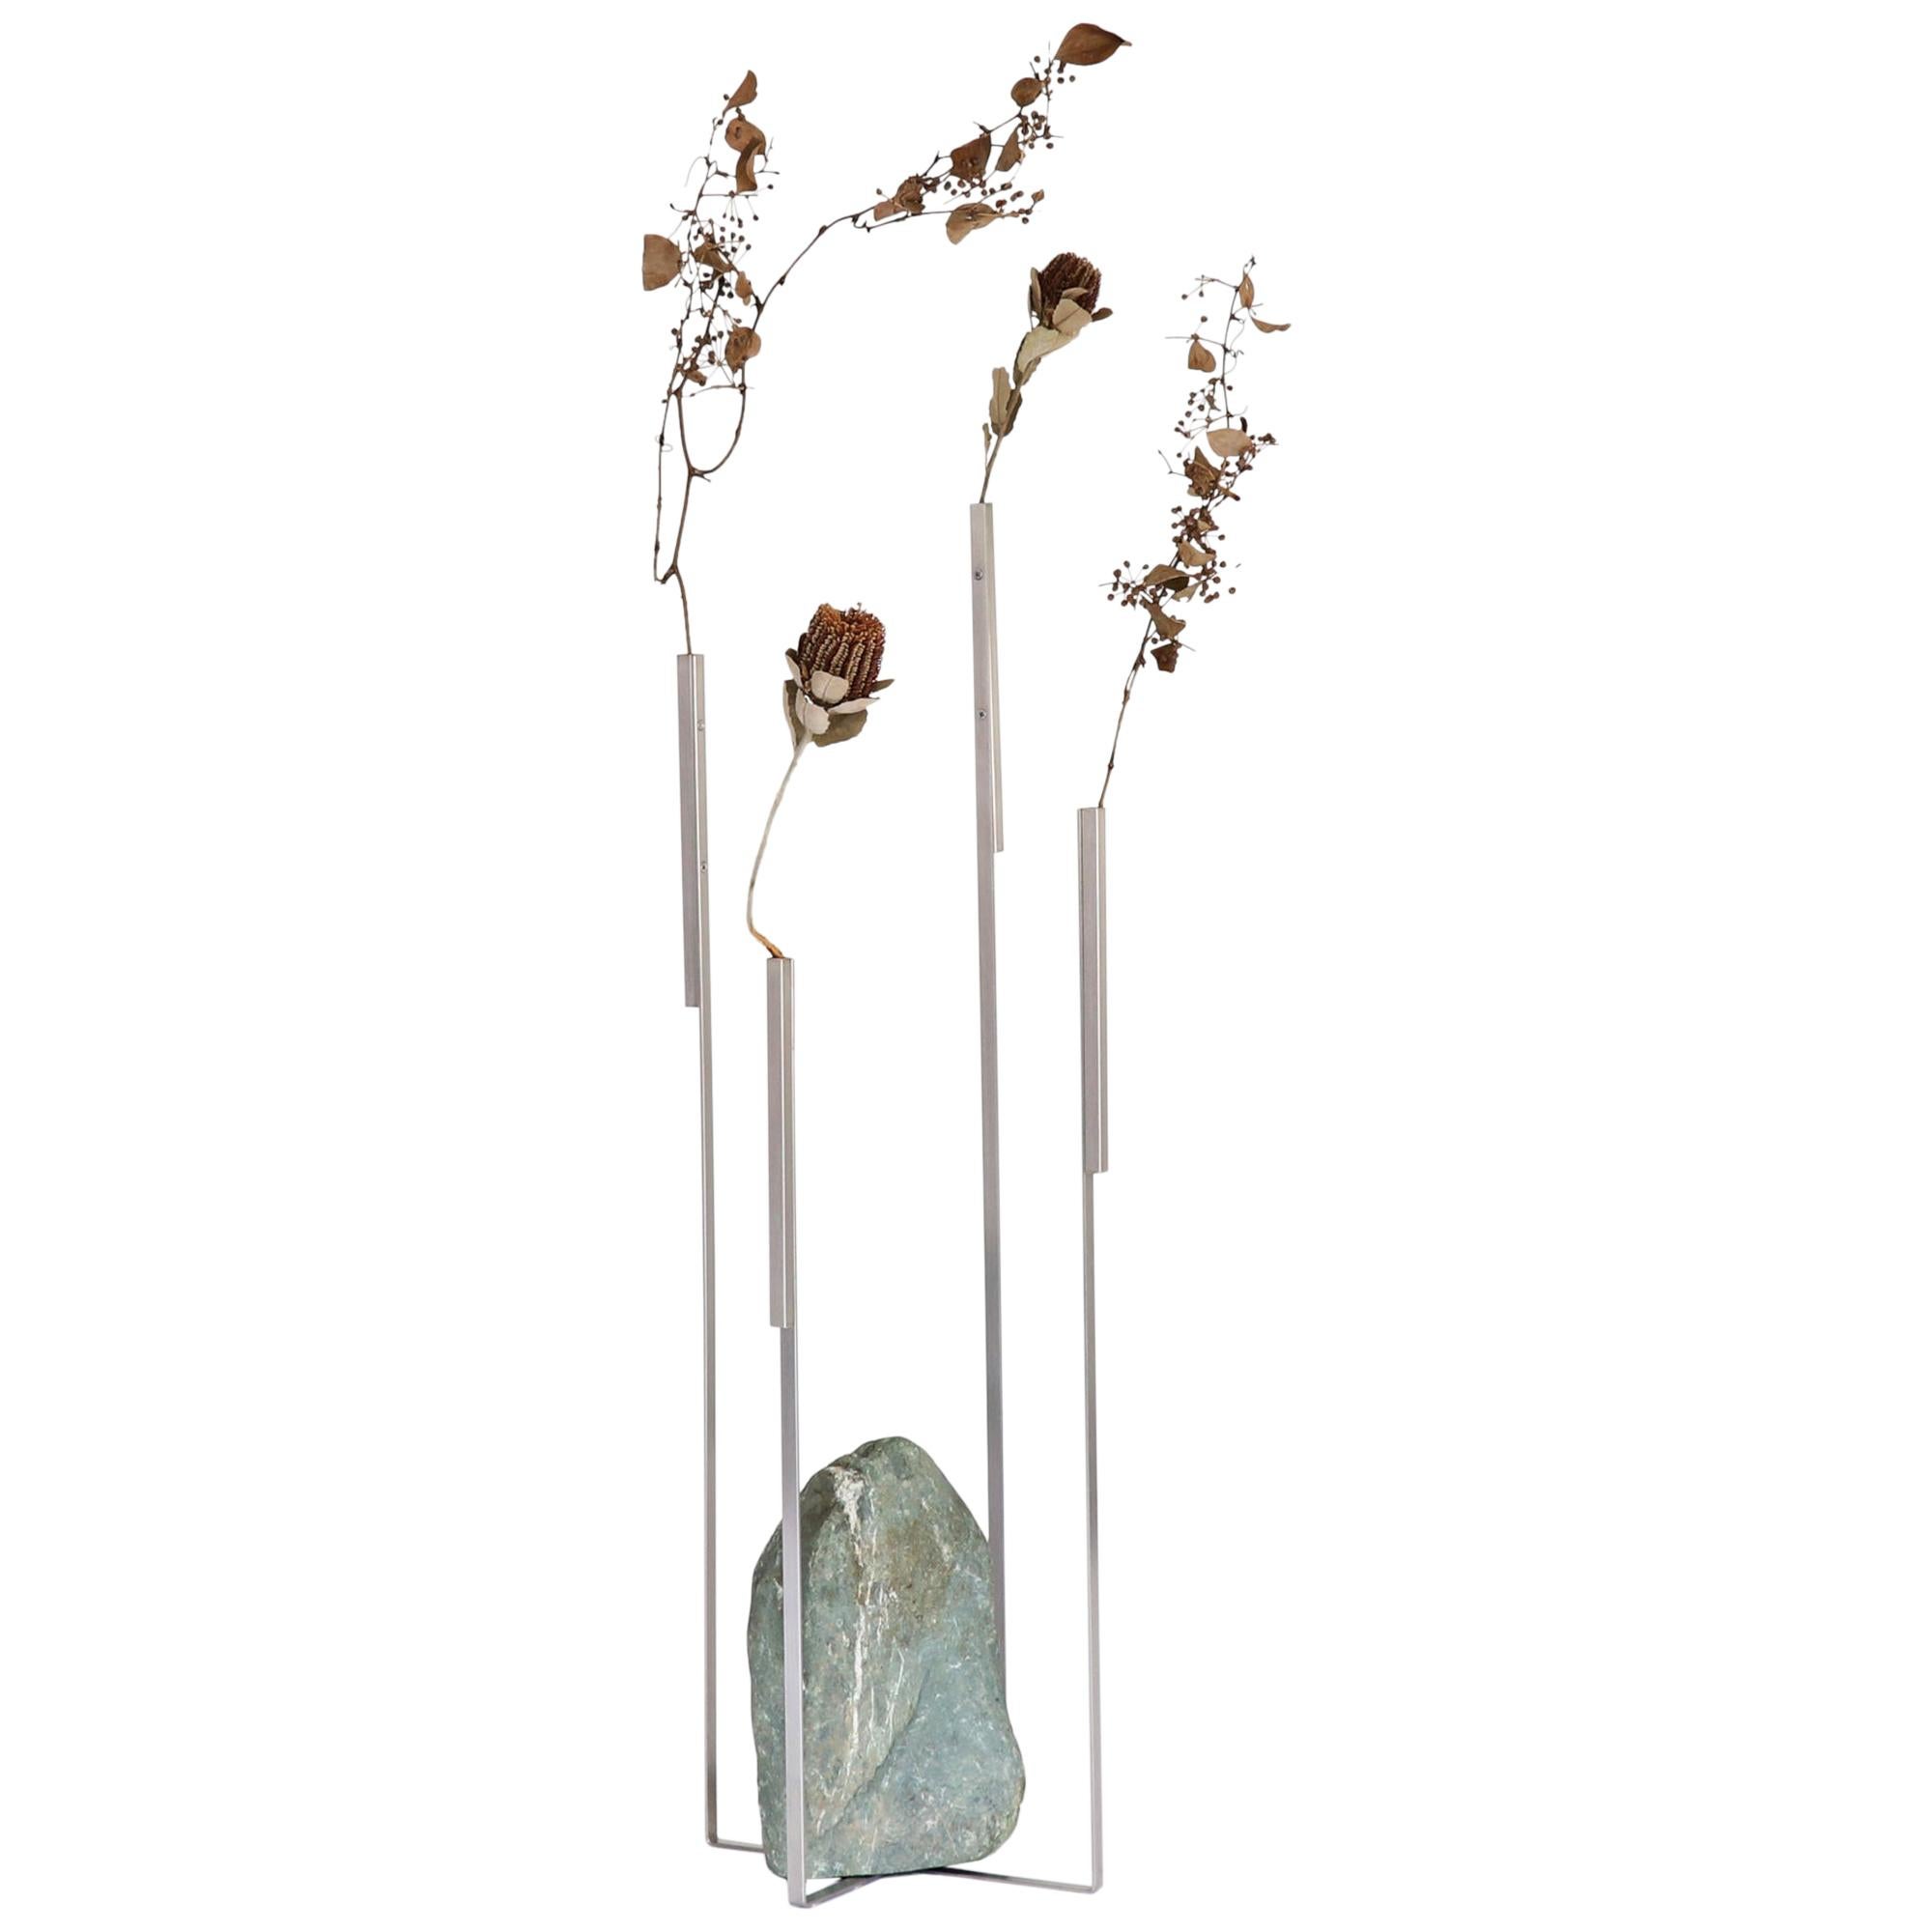 Odd Balance 01 Sculptural Vase Batten and Kamp Minimalist For Sale